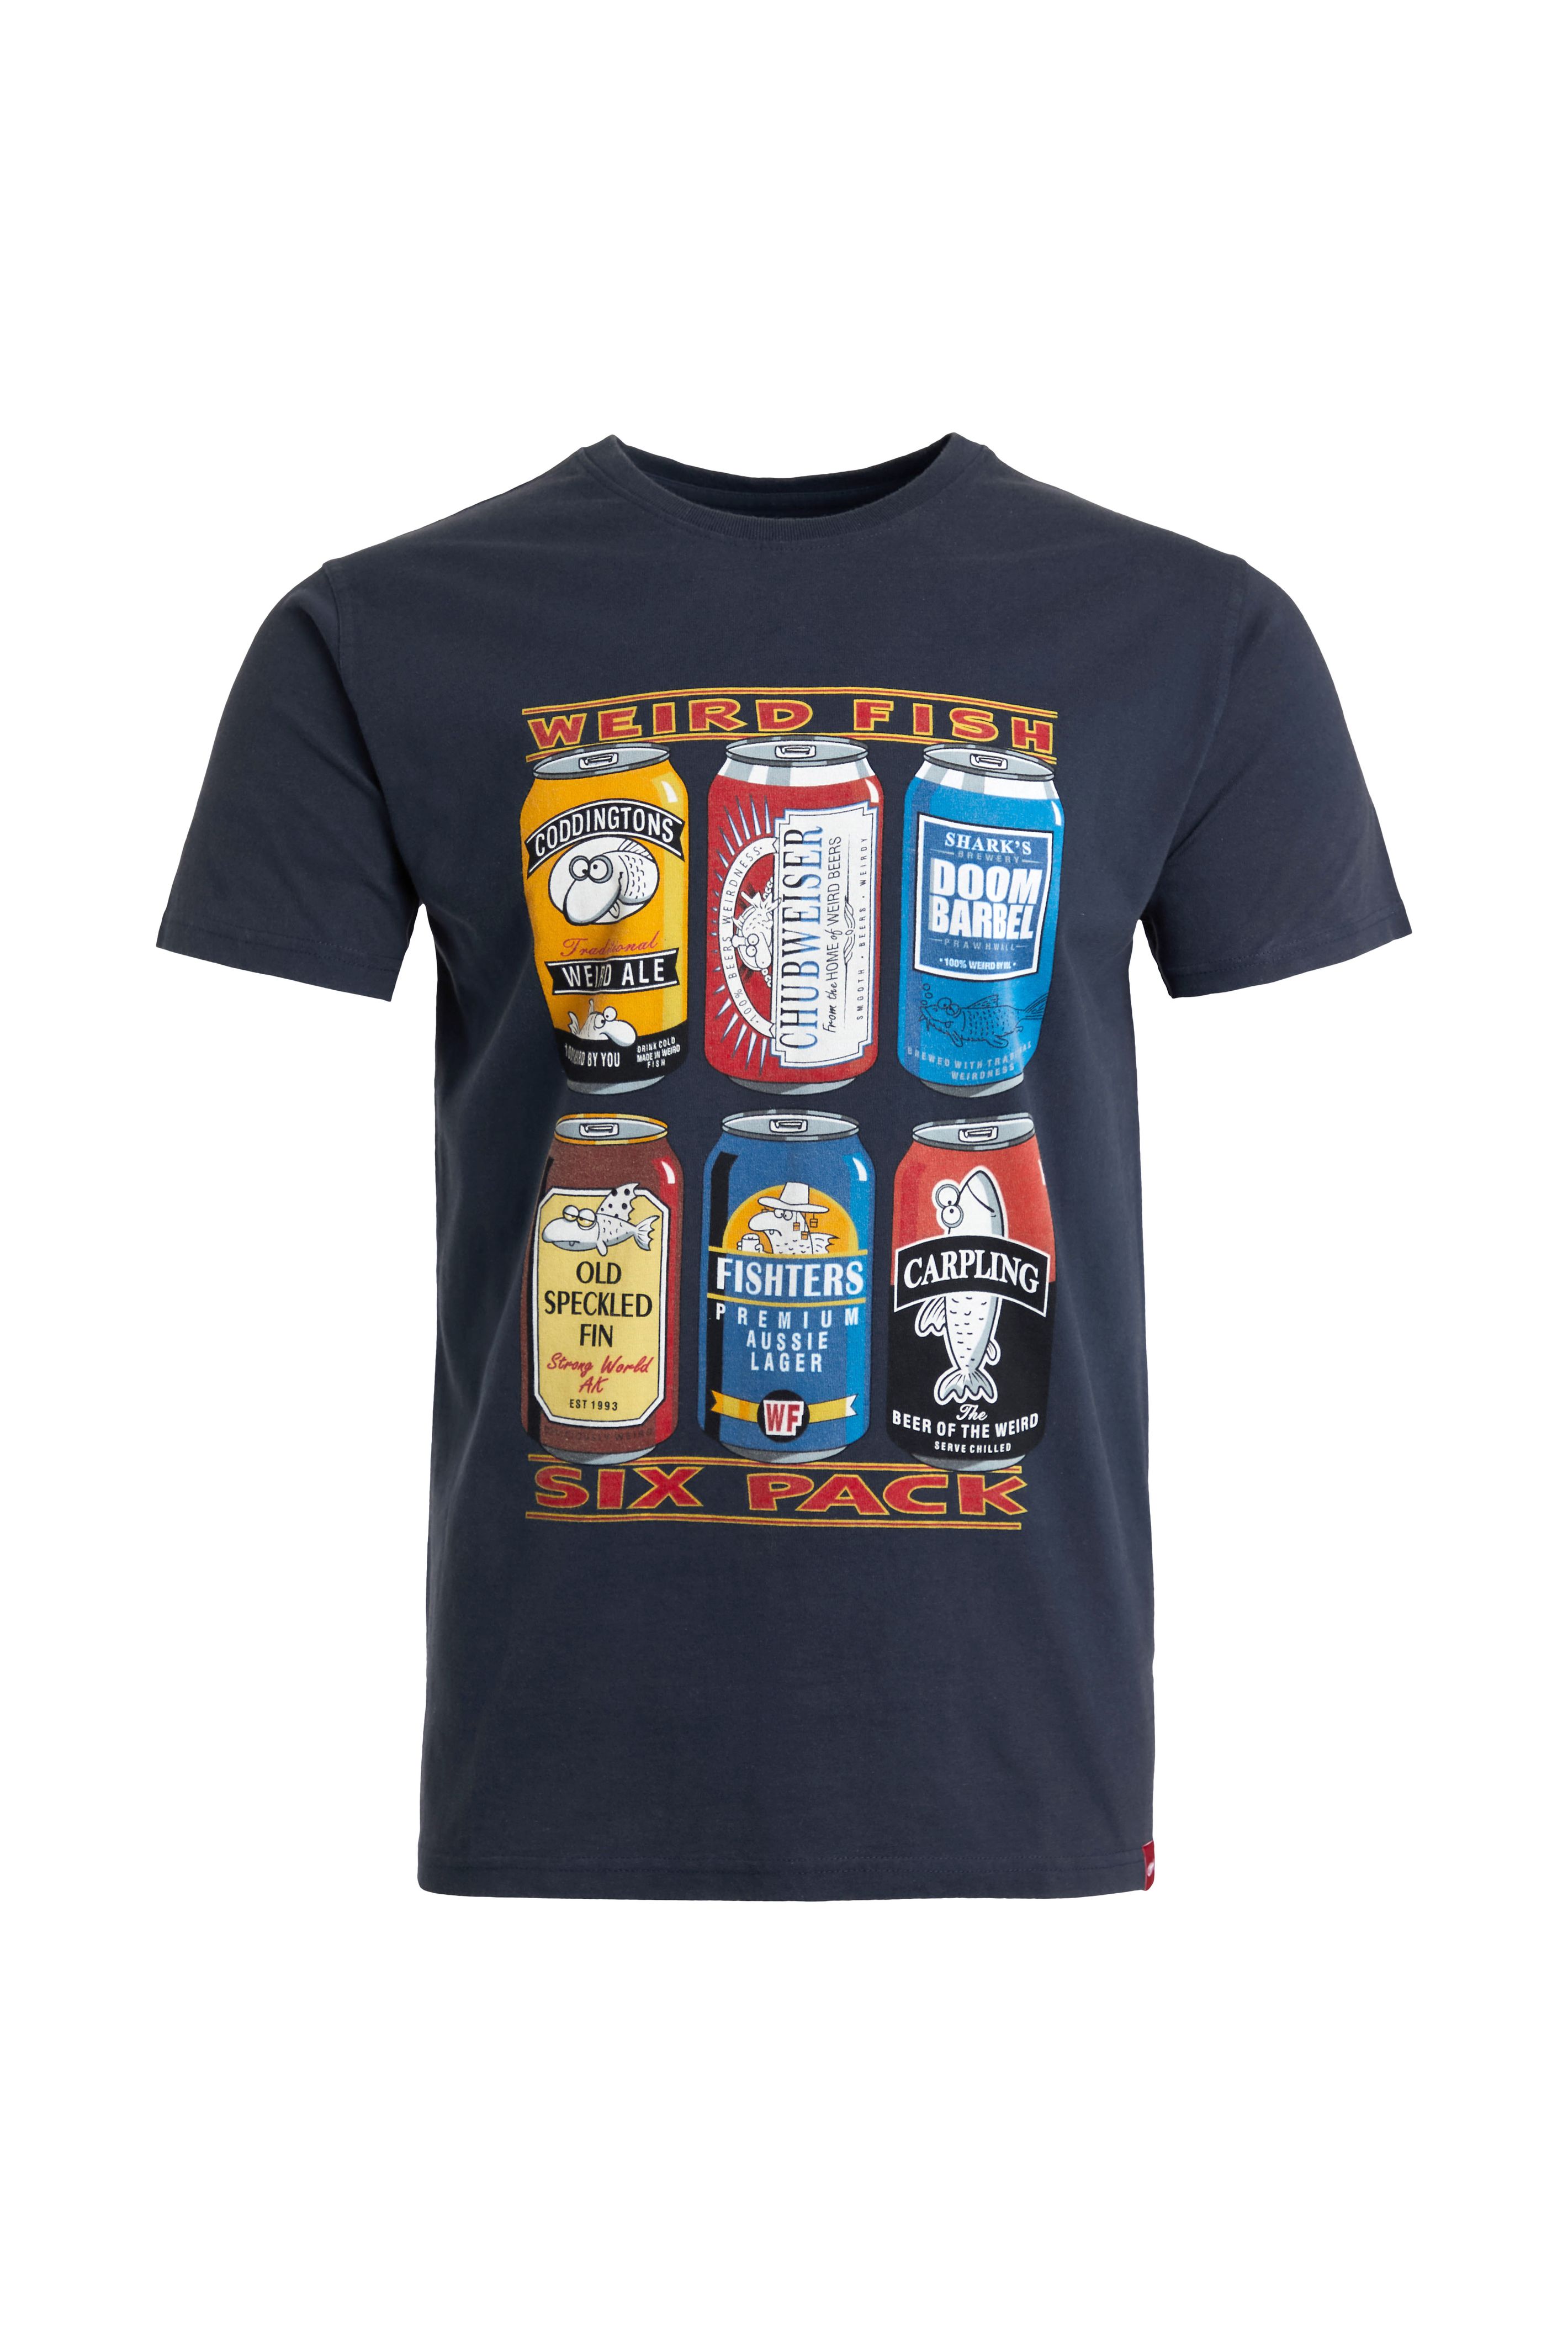 New Weird Fish Men’s ’6 Pack Beer Cans’ Artist T-Shirt 